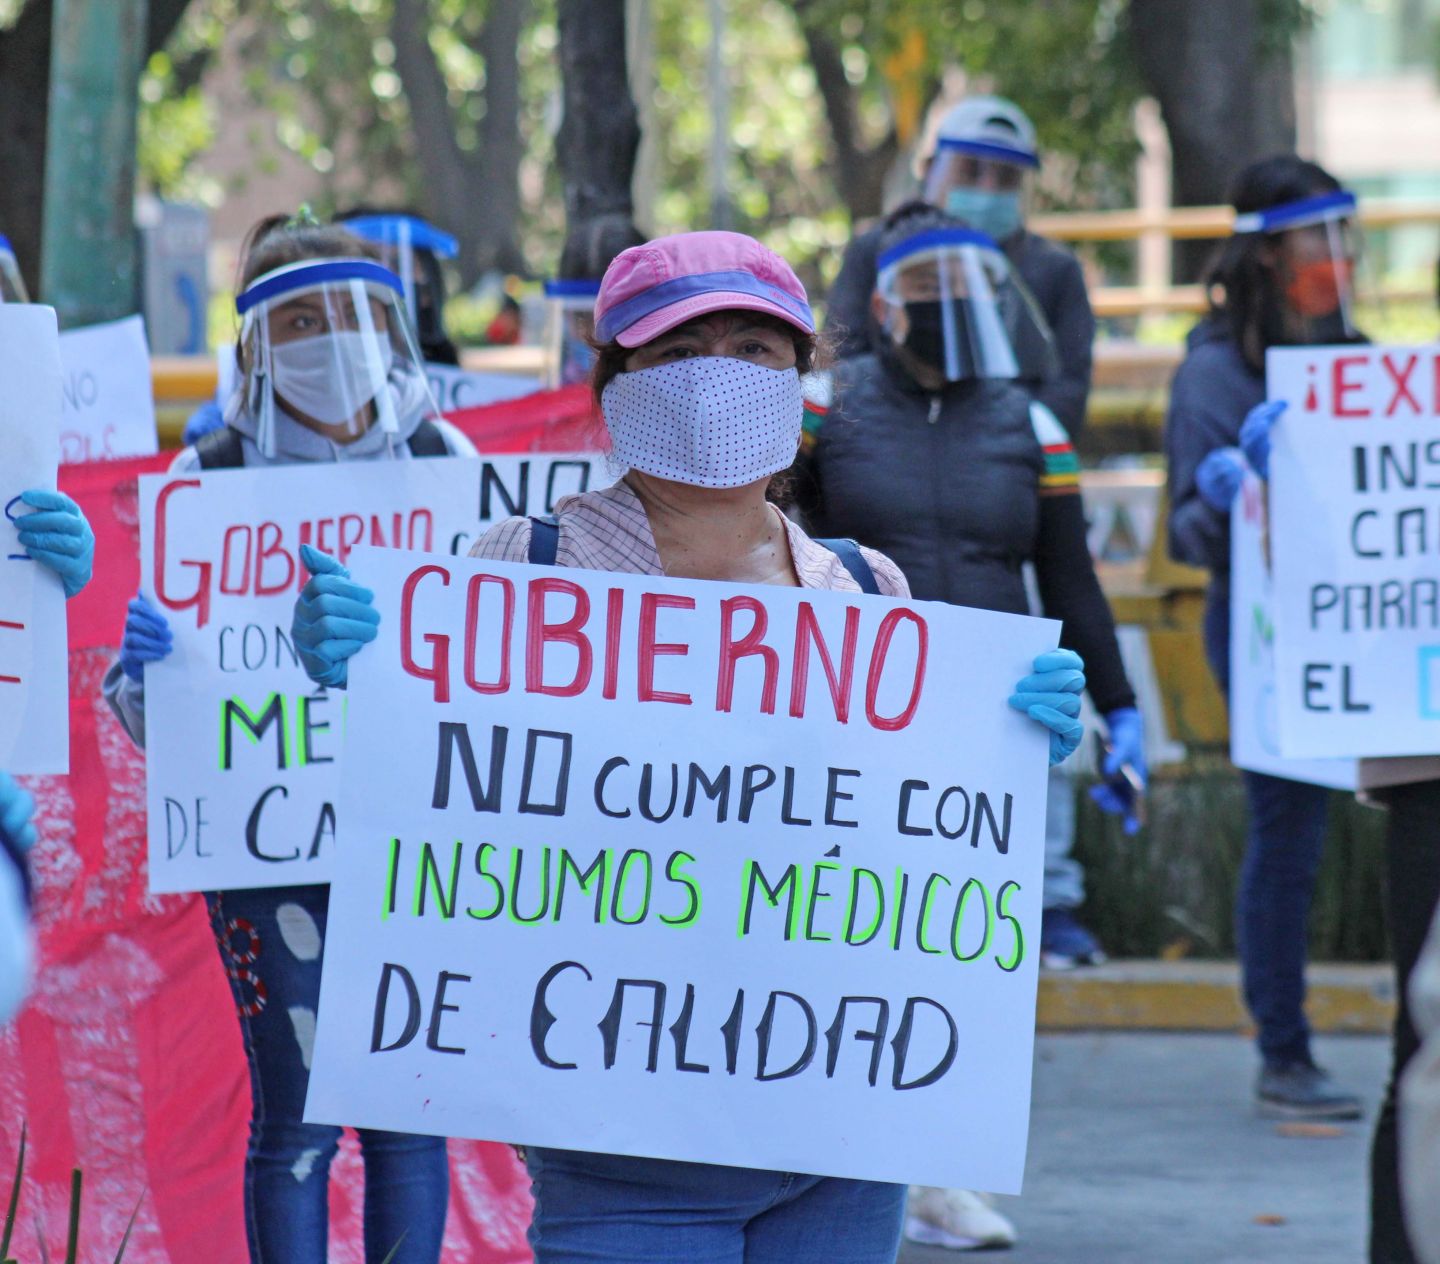 Médicos de Chimalhuacán en riesgo de contraer COVID-19 debido a la falta de insumos